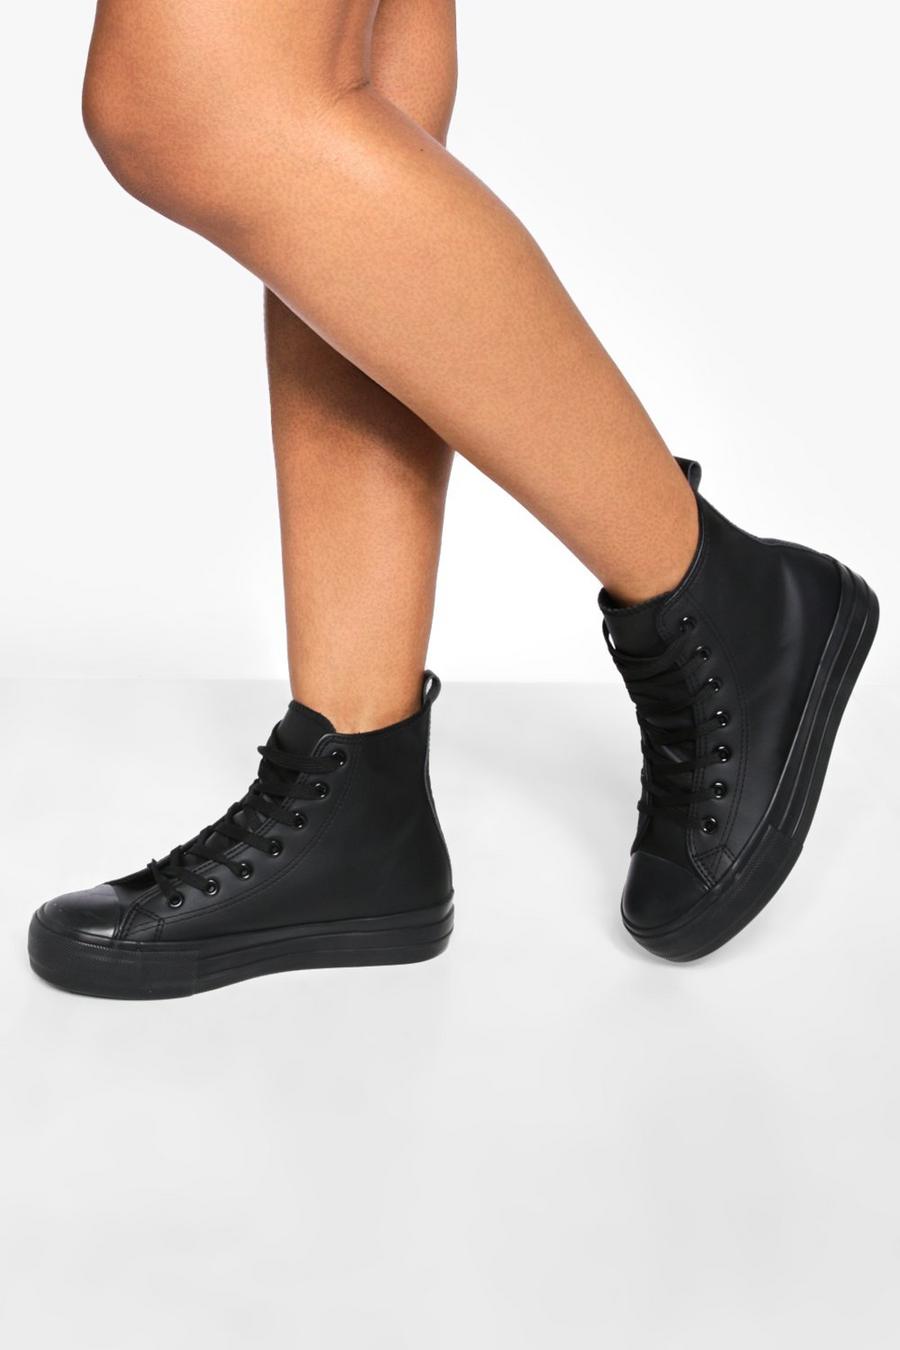 Zapatillas deportivas altas de cuero sintético con cordones cruzados, Black negro